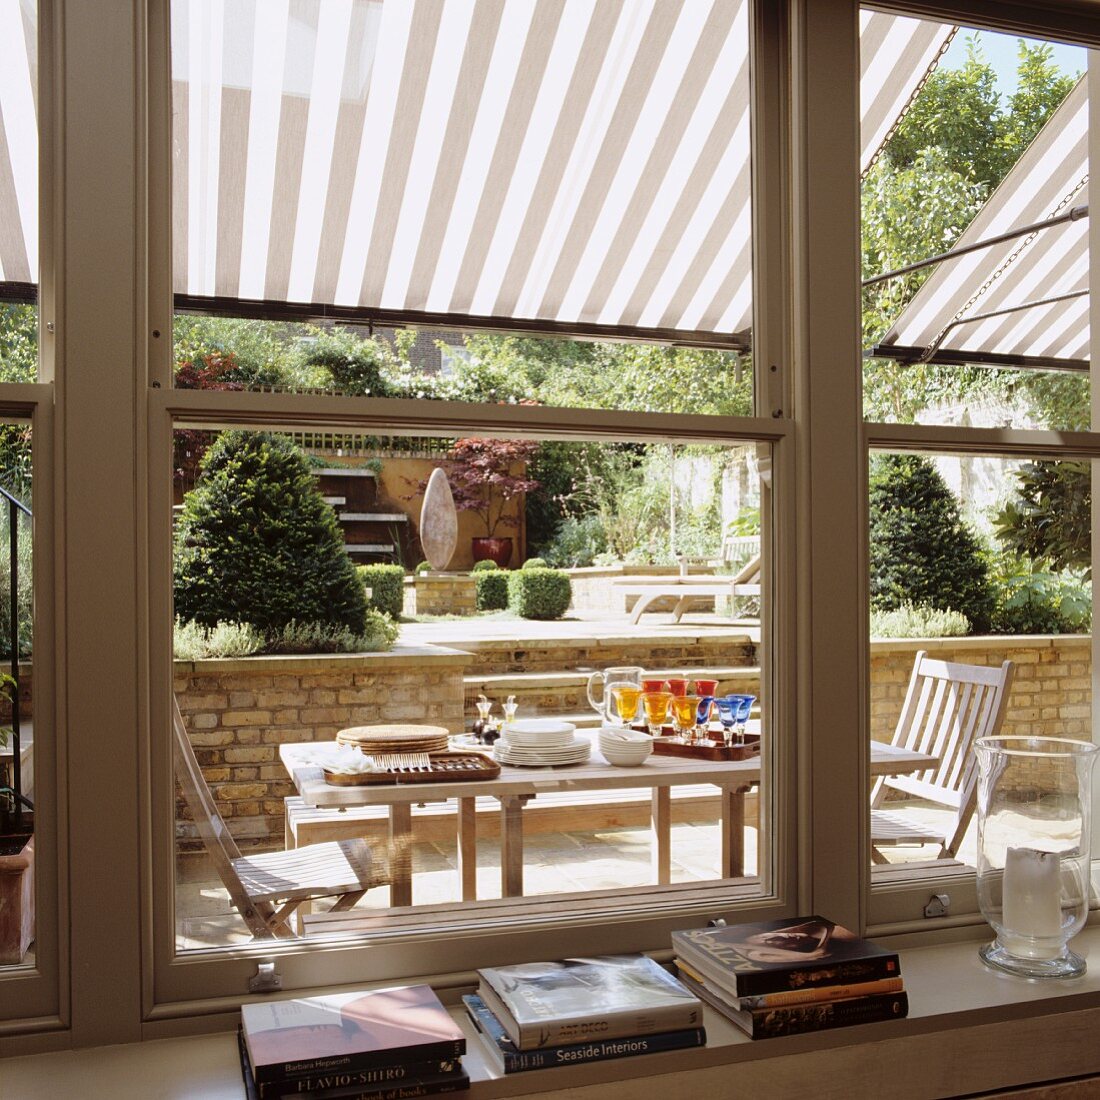 Blick durch Schiebefenster auf Terrasse mit gedecktem Tisch unter gestreifter Pergola